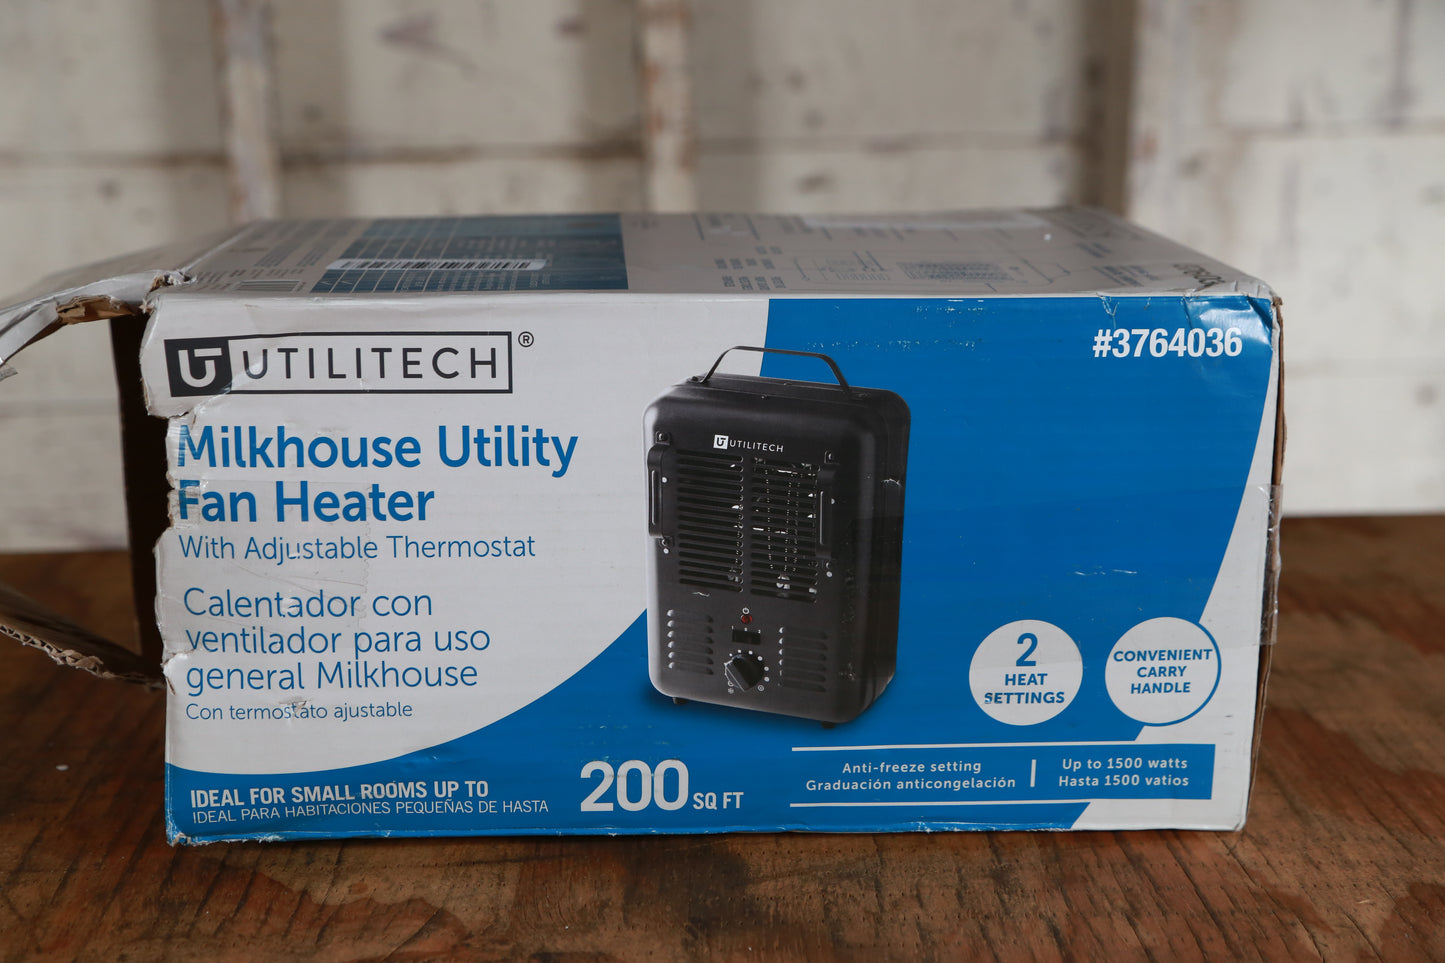 Utilitech Milkhouse Utility Fan Heater